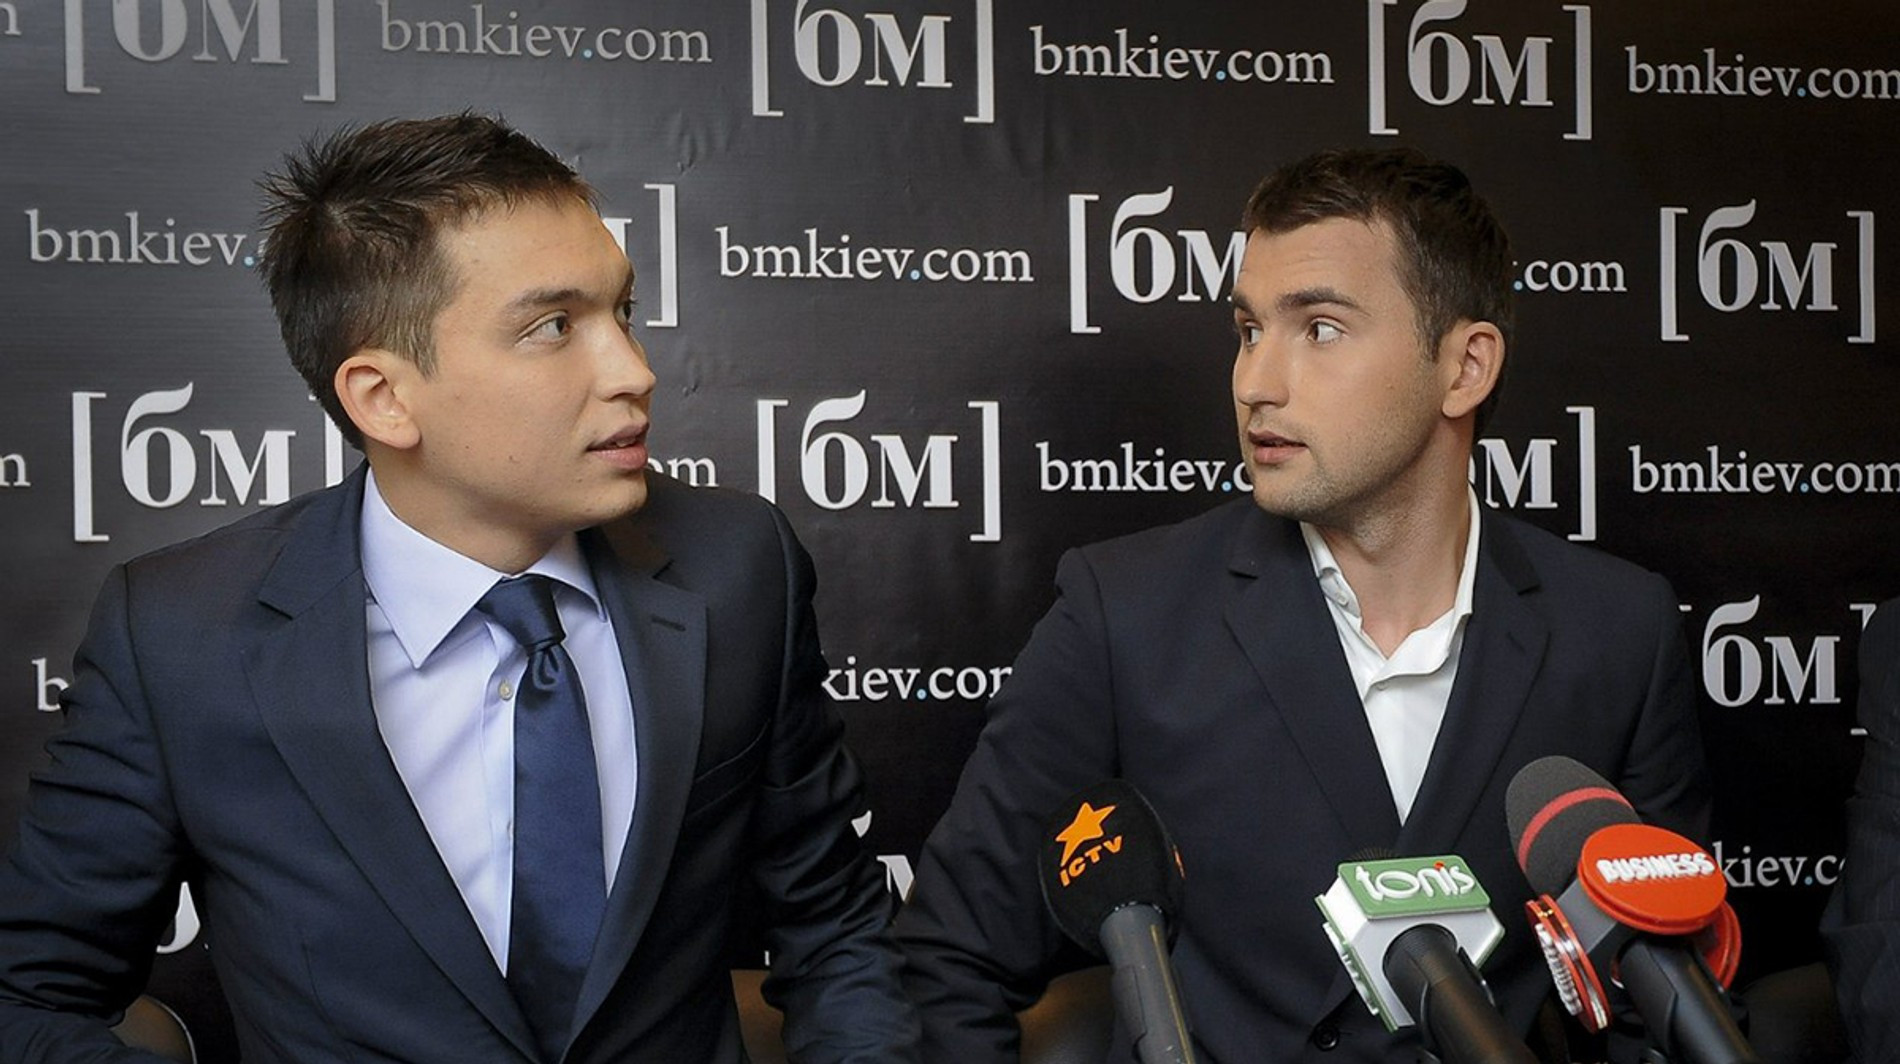 Основатели компании «Бизнес-молодость» Петр Осипов и Михаил Дашкиев. Источник: социальные сети